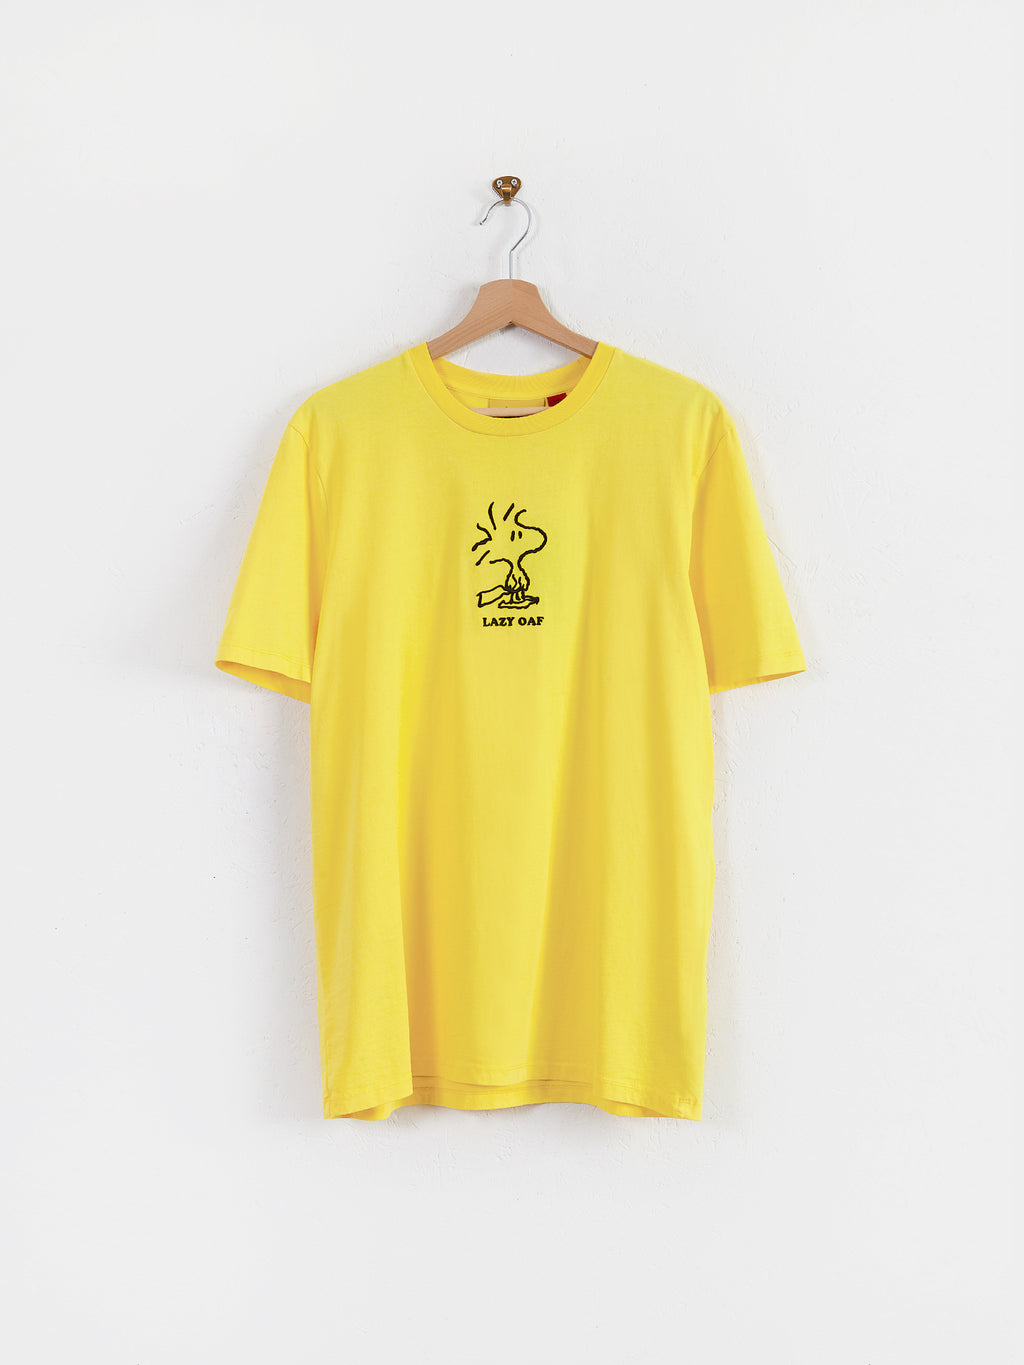 Lazy Oaf x Peanuts Woodstock Yellow T-Shirt